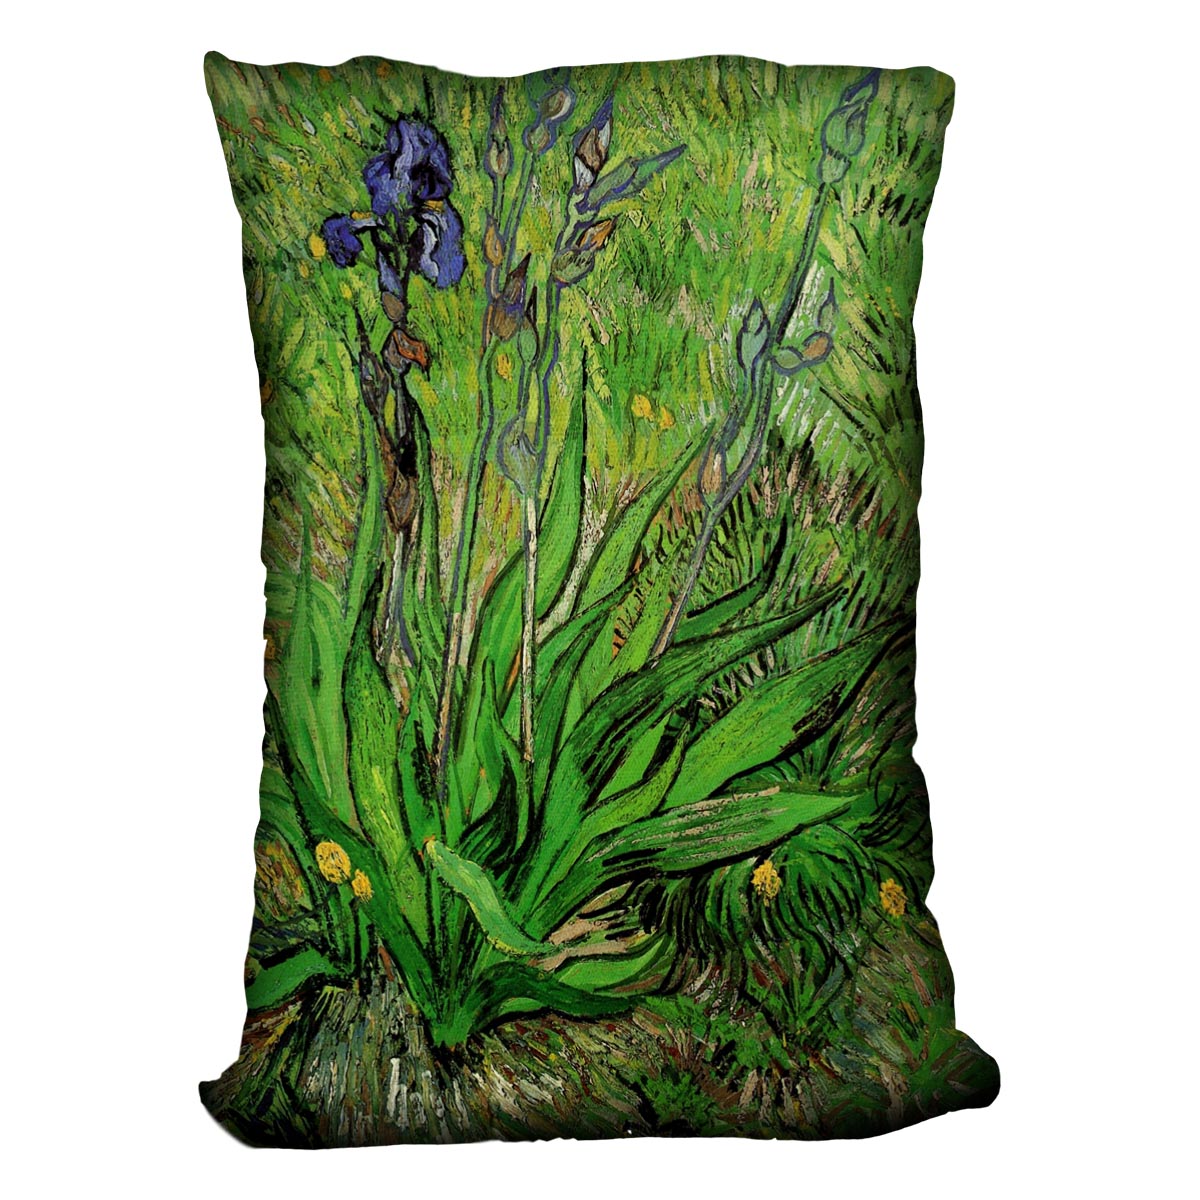 The Iris by Van Gogh Cushion